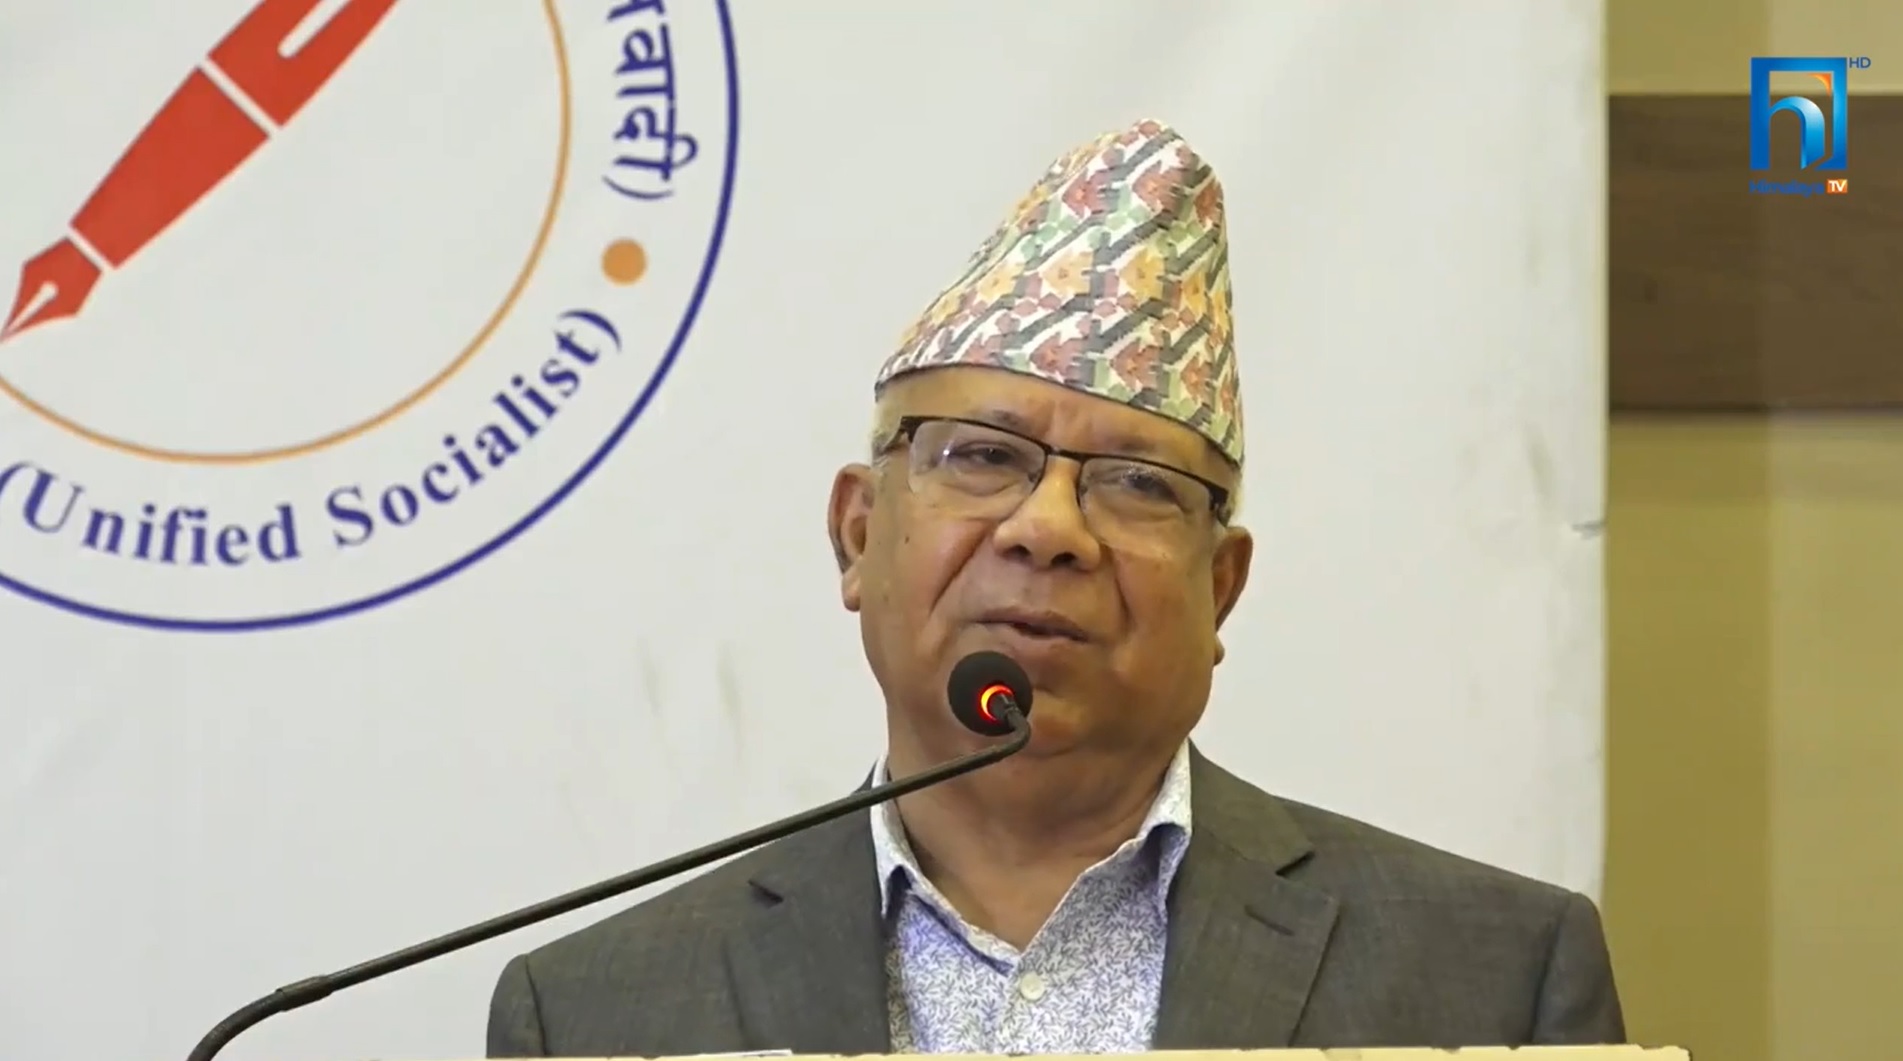 राष्ट्रपतिको सवालमा सहमतिकै पक्षमा छौँ : पूर्वप्रधानमन्त्री नेपाल